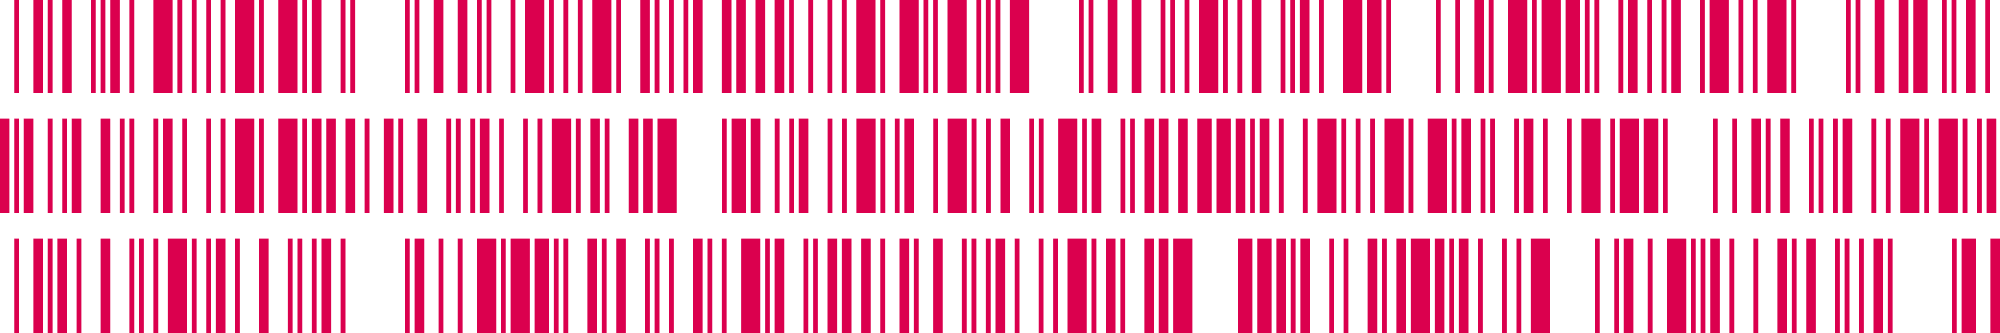 Barcode pattern